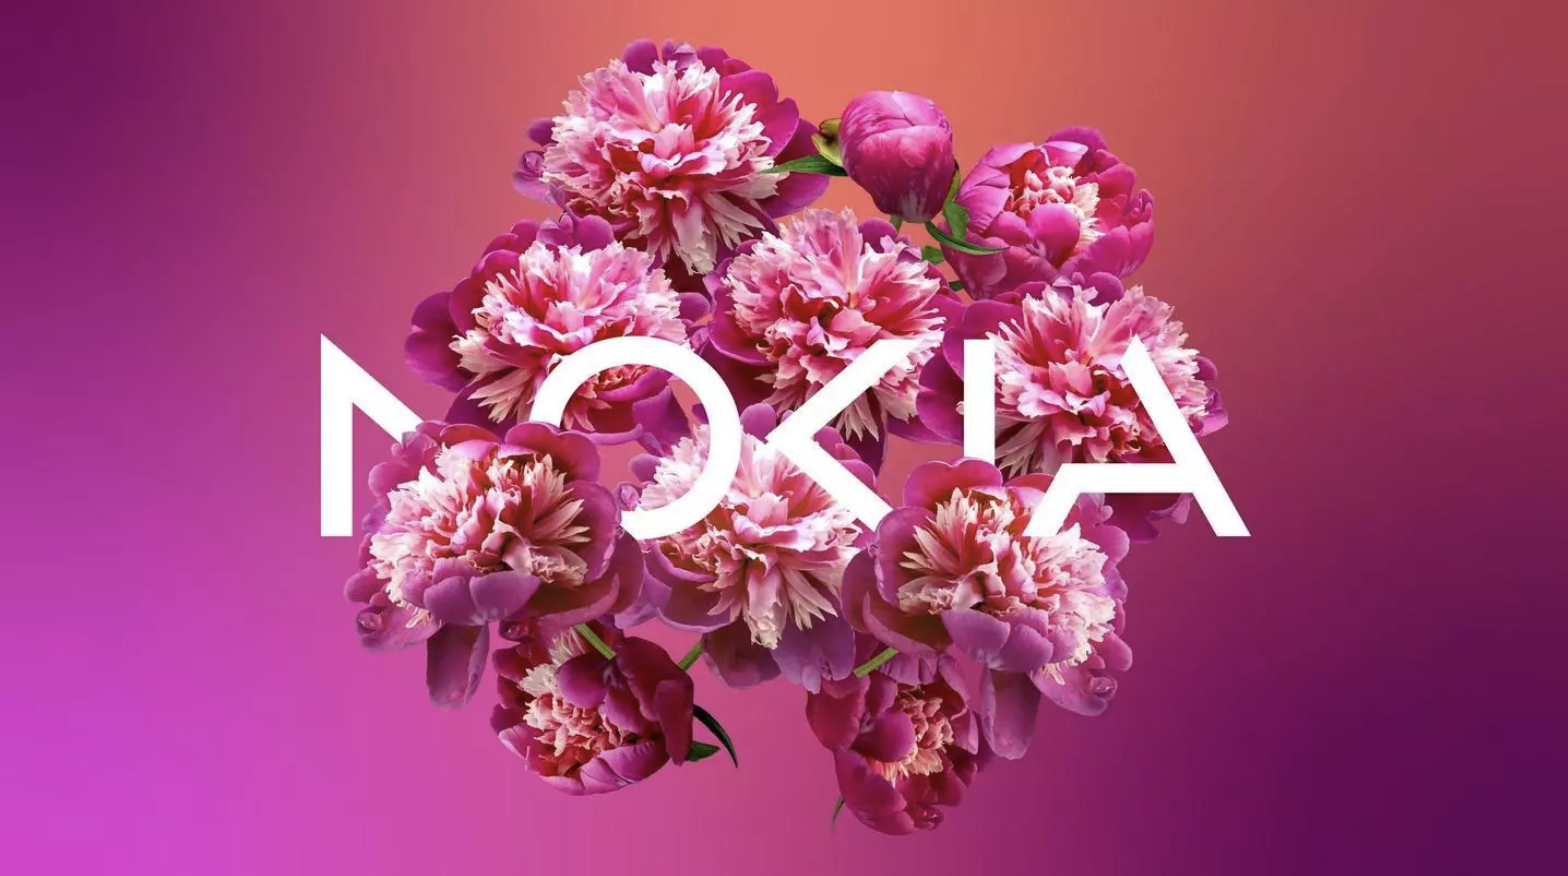 Firma Nokia zaktualizowała swoje logo po raz pierwszy od 60 lat